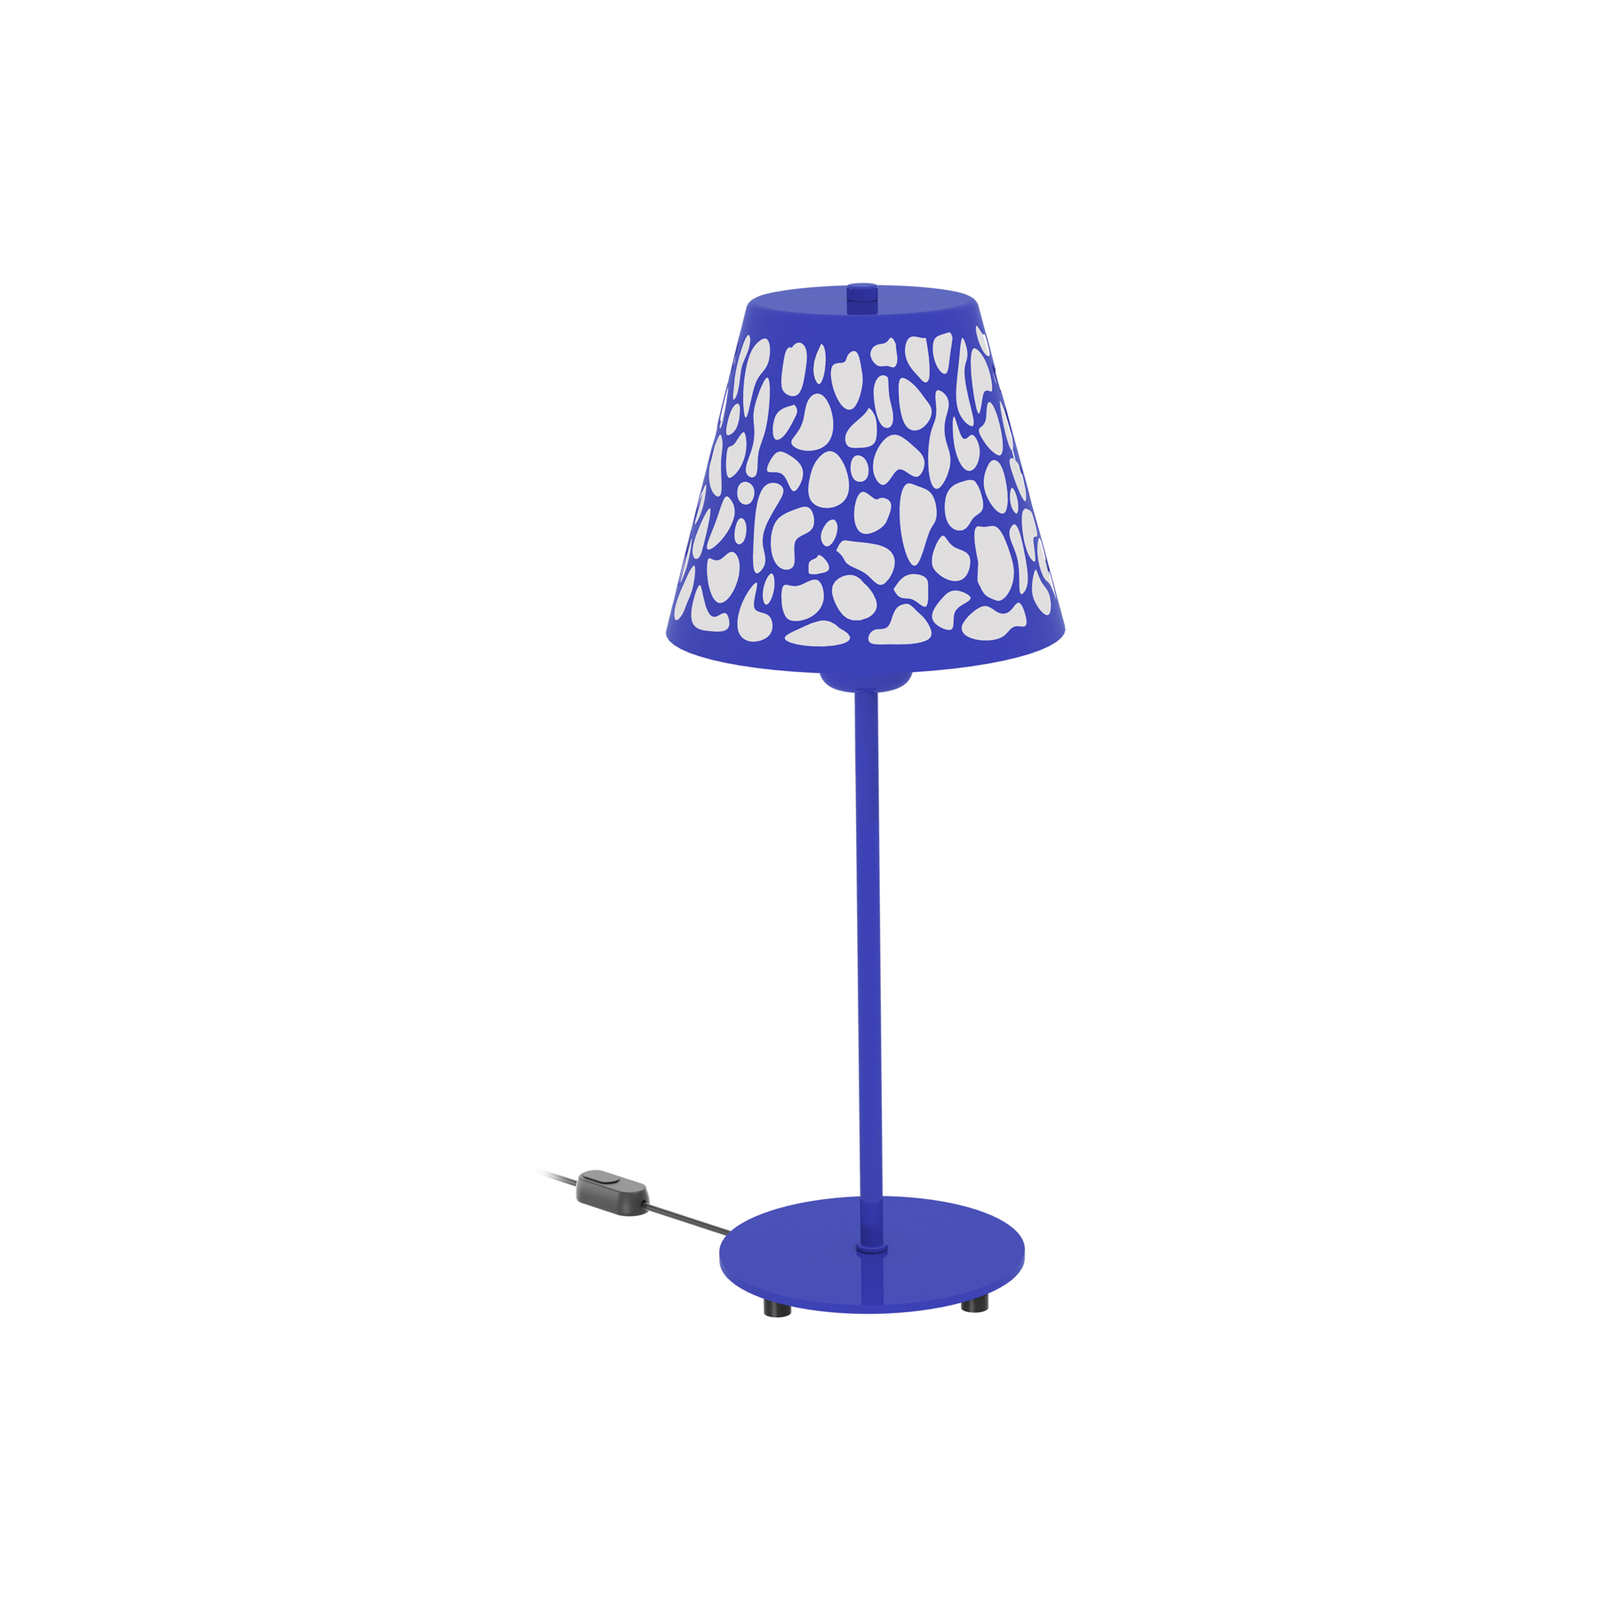 Aluminor Nihoa bordlampe med hullmønster blå/hvit